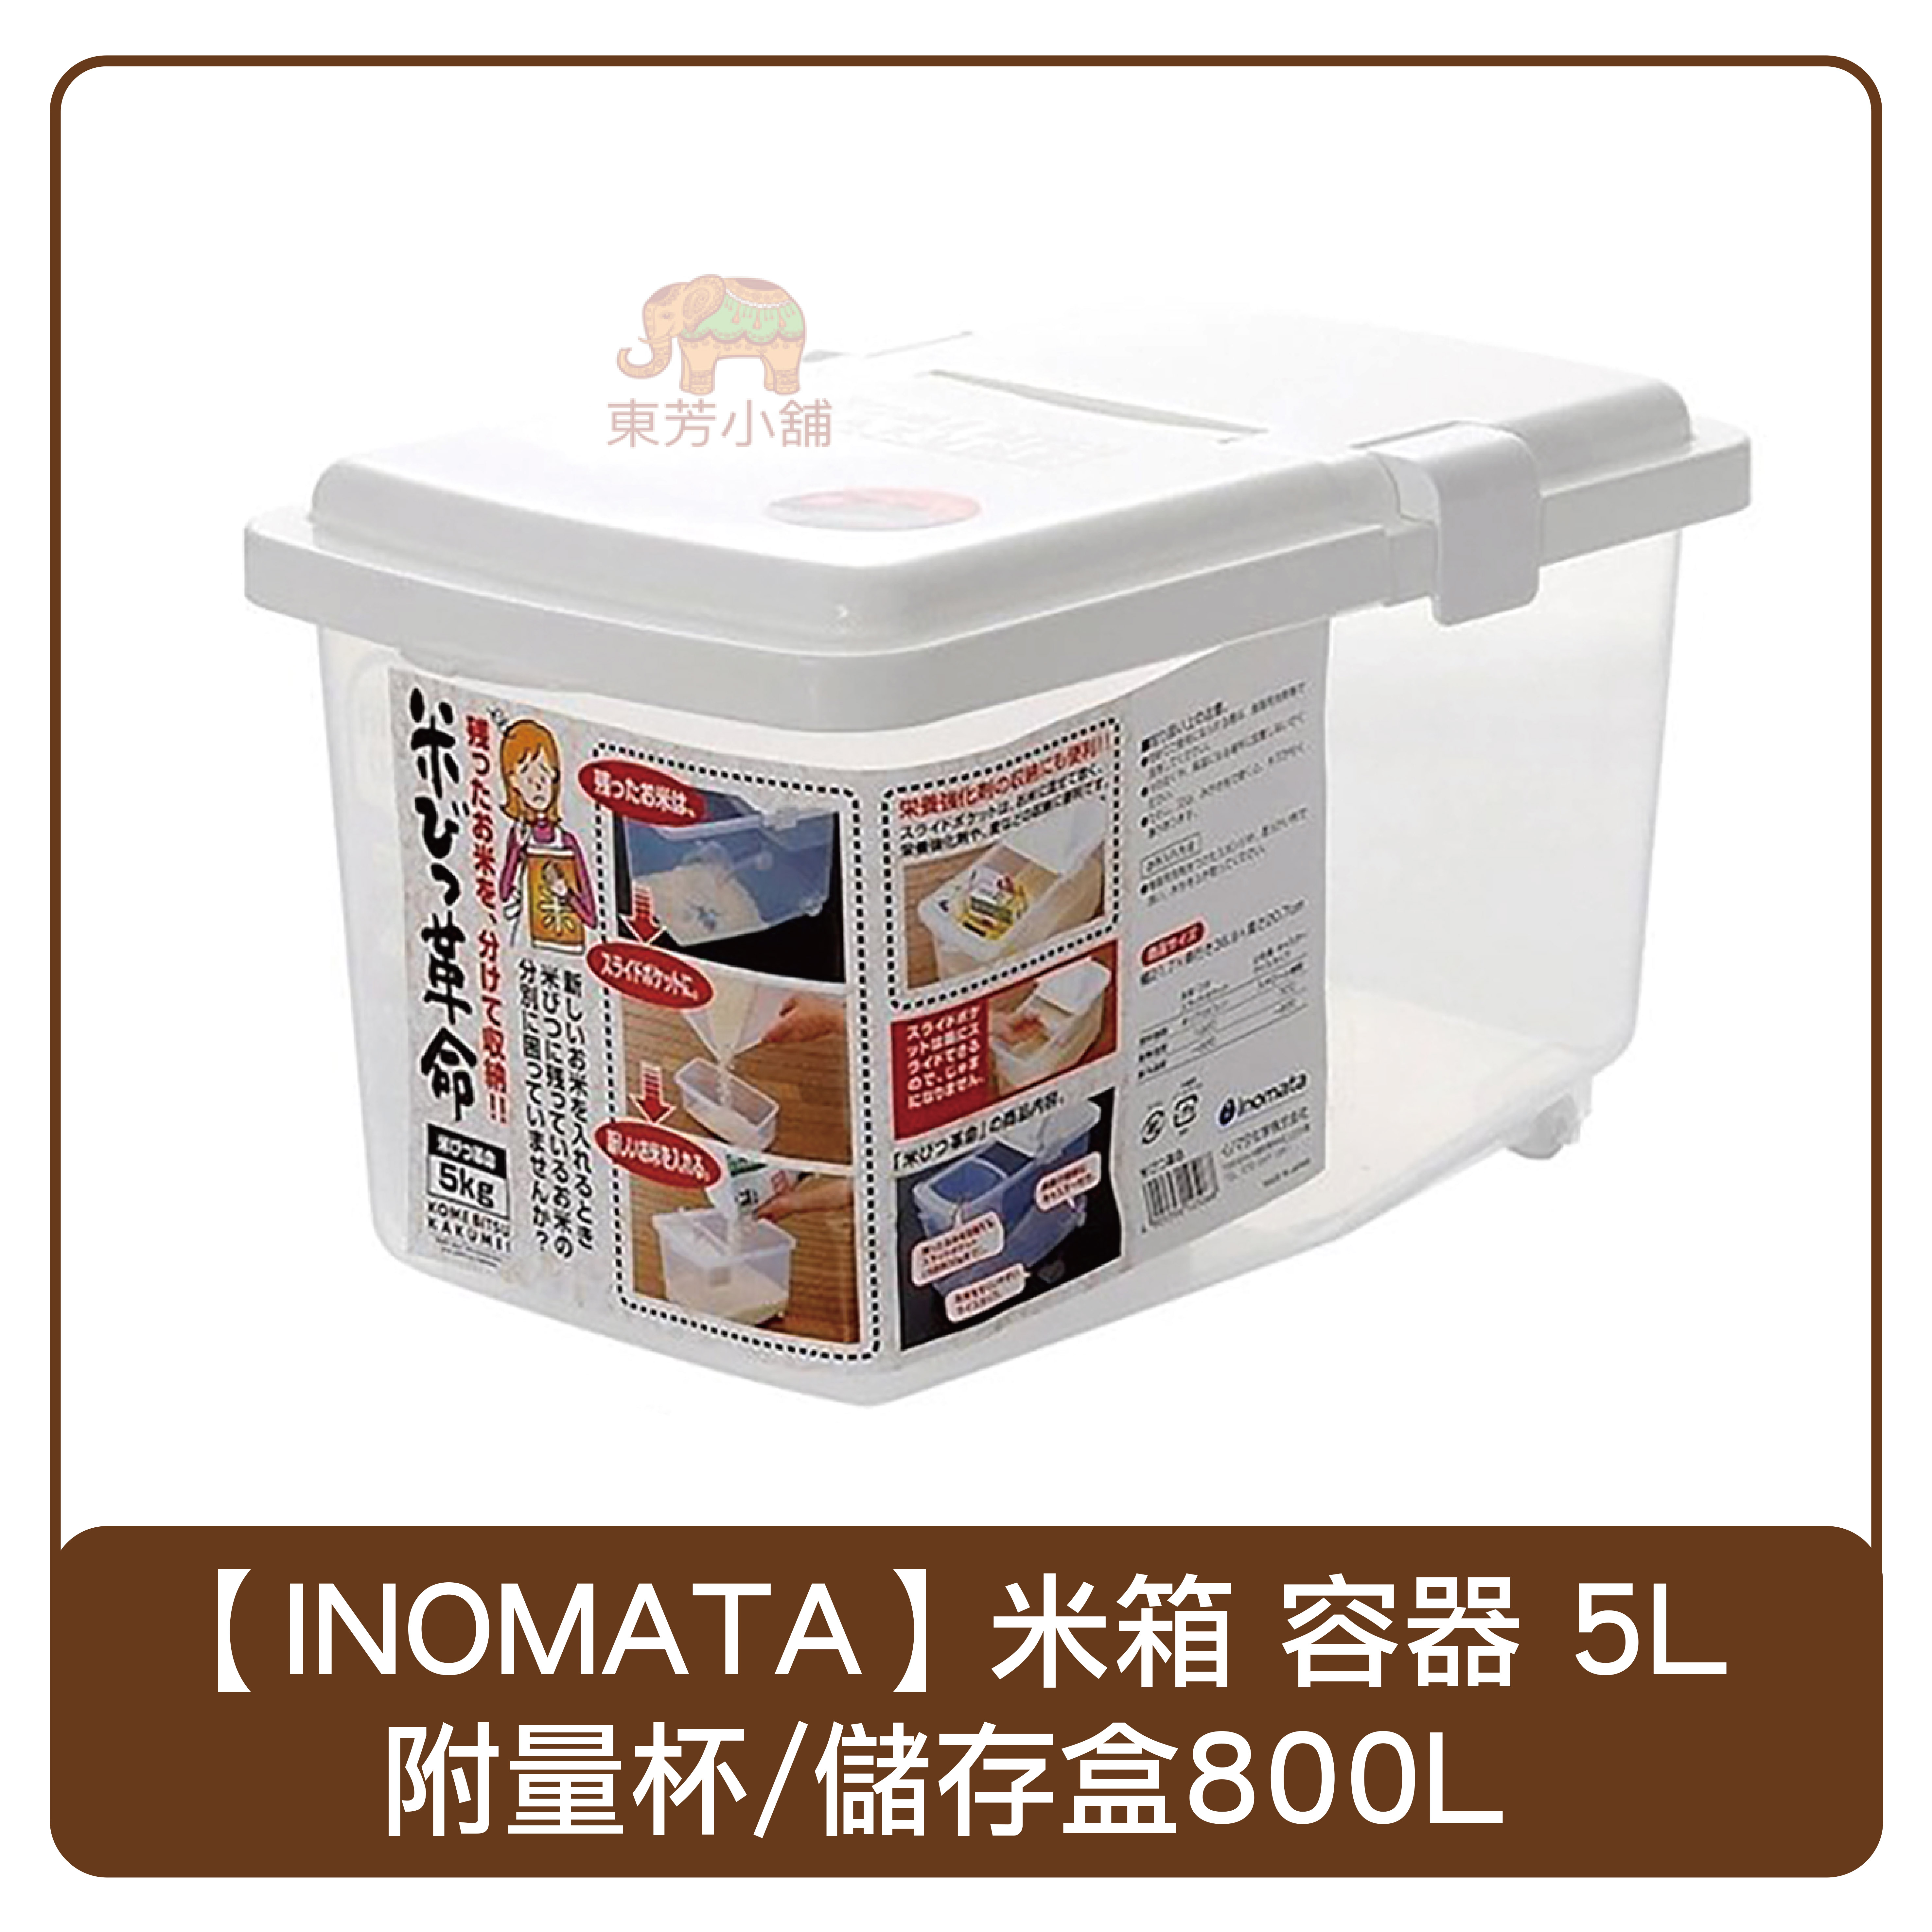 日本inomata 米箱容器掀蓋式米桶儲米箱5l 附量杯 儲存盒800ml 日本製